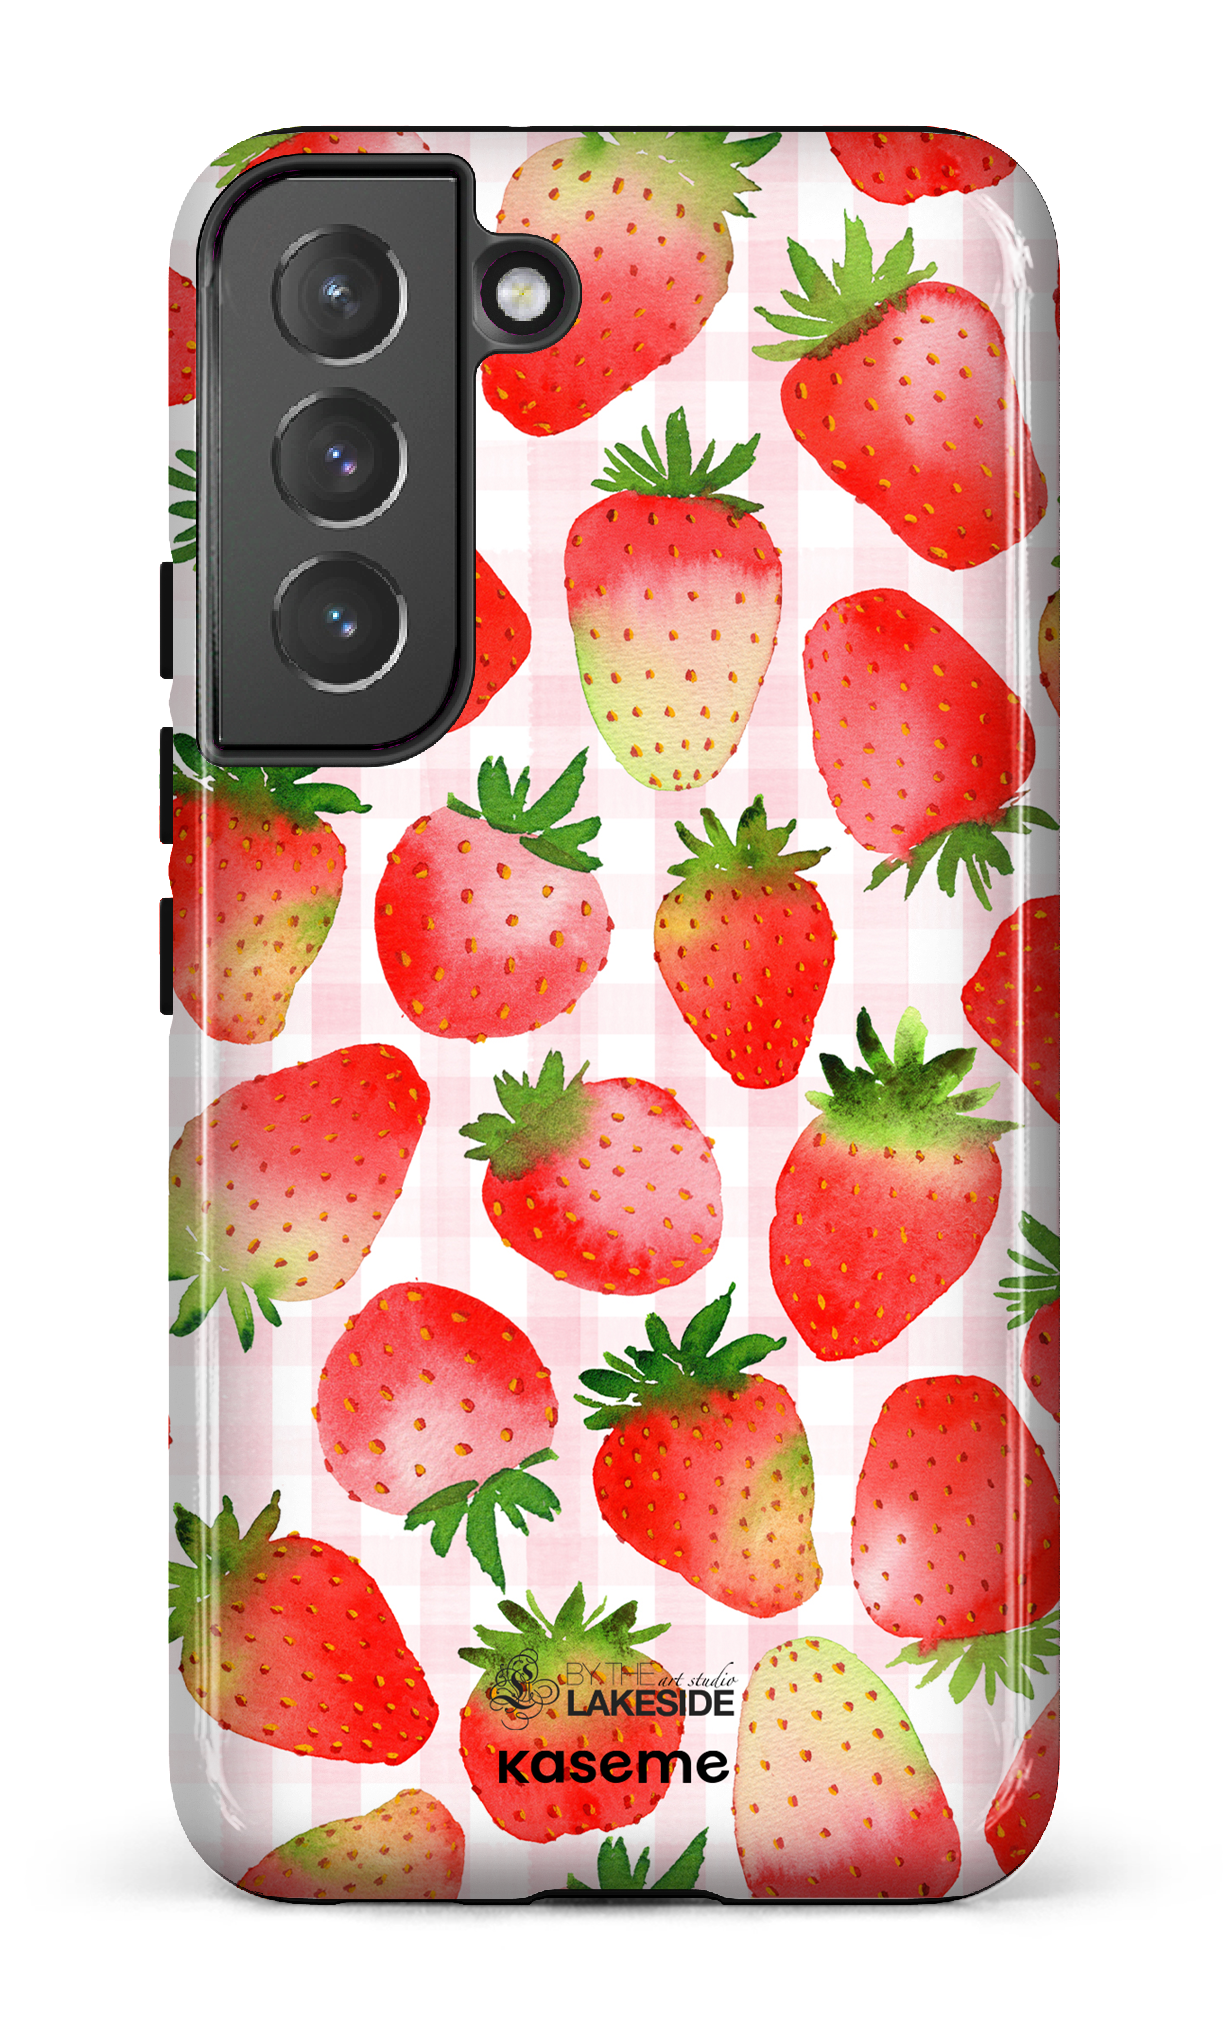 Strawberry Fields by Pooja Umrani - Galaxy S22